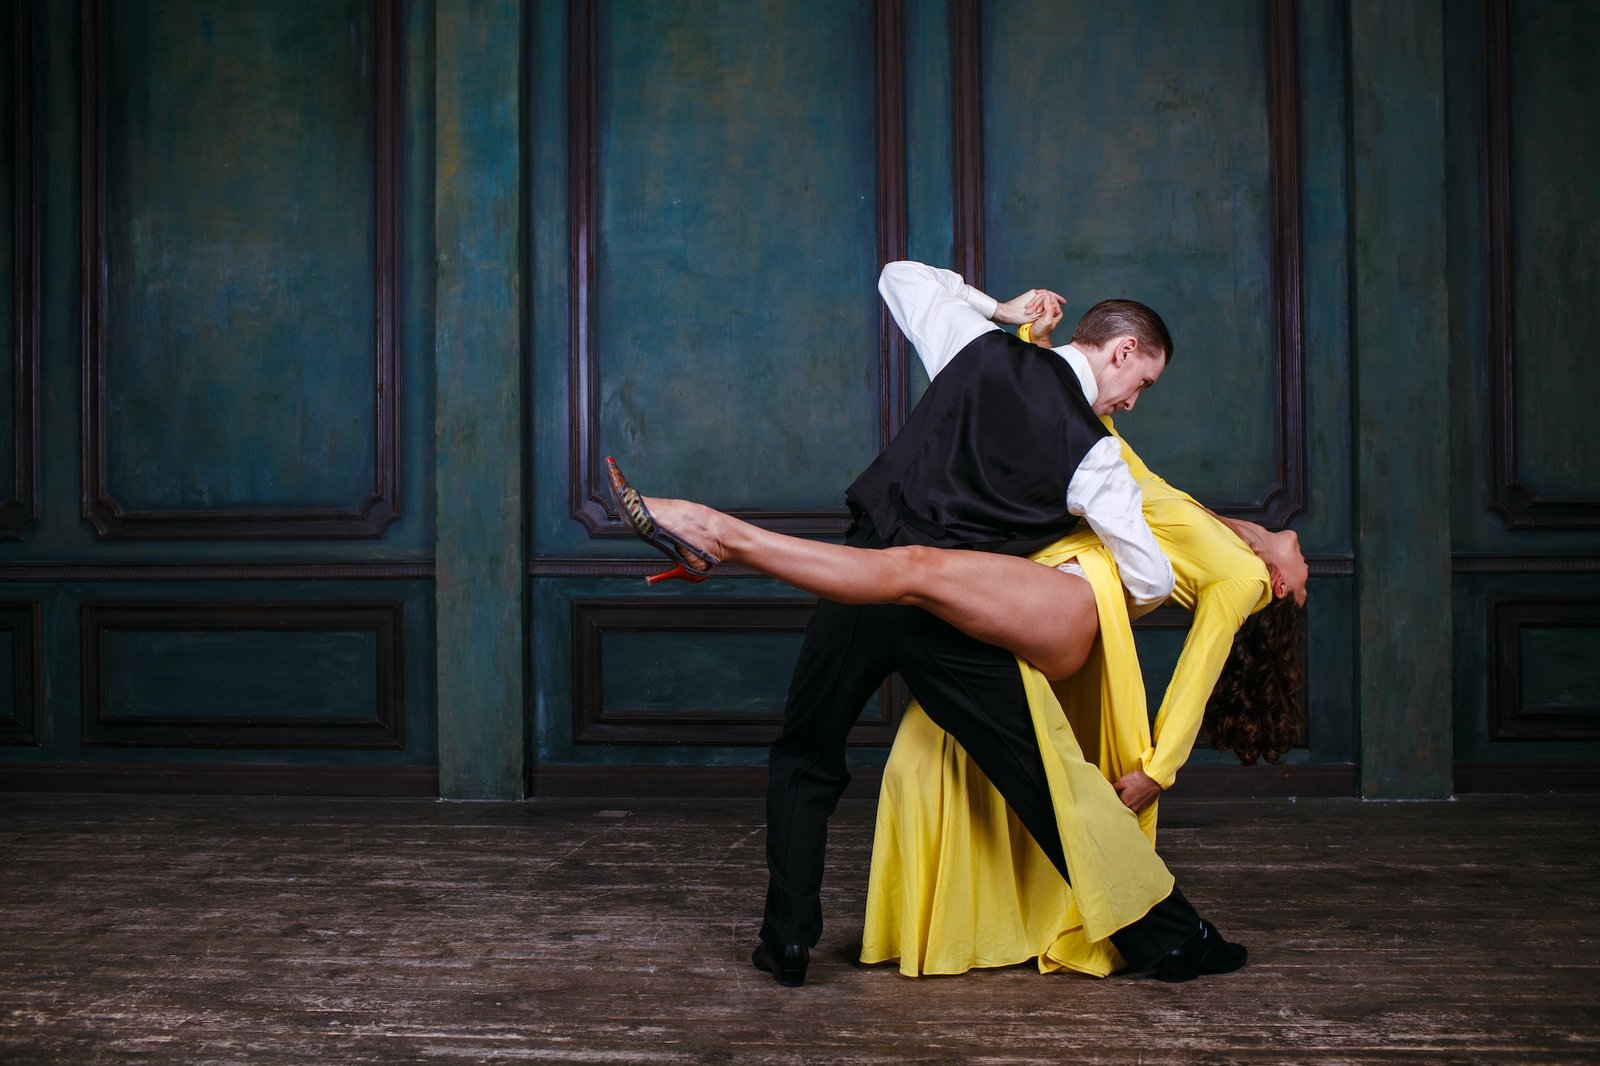 Man and woman in black dress dance tango